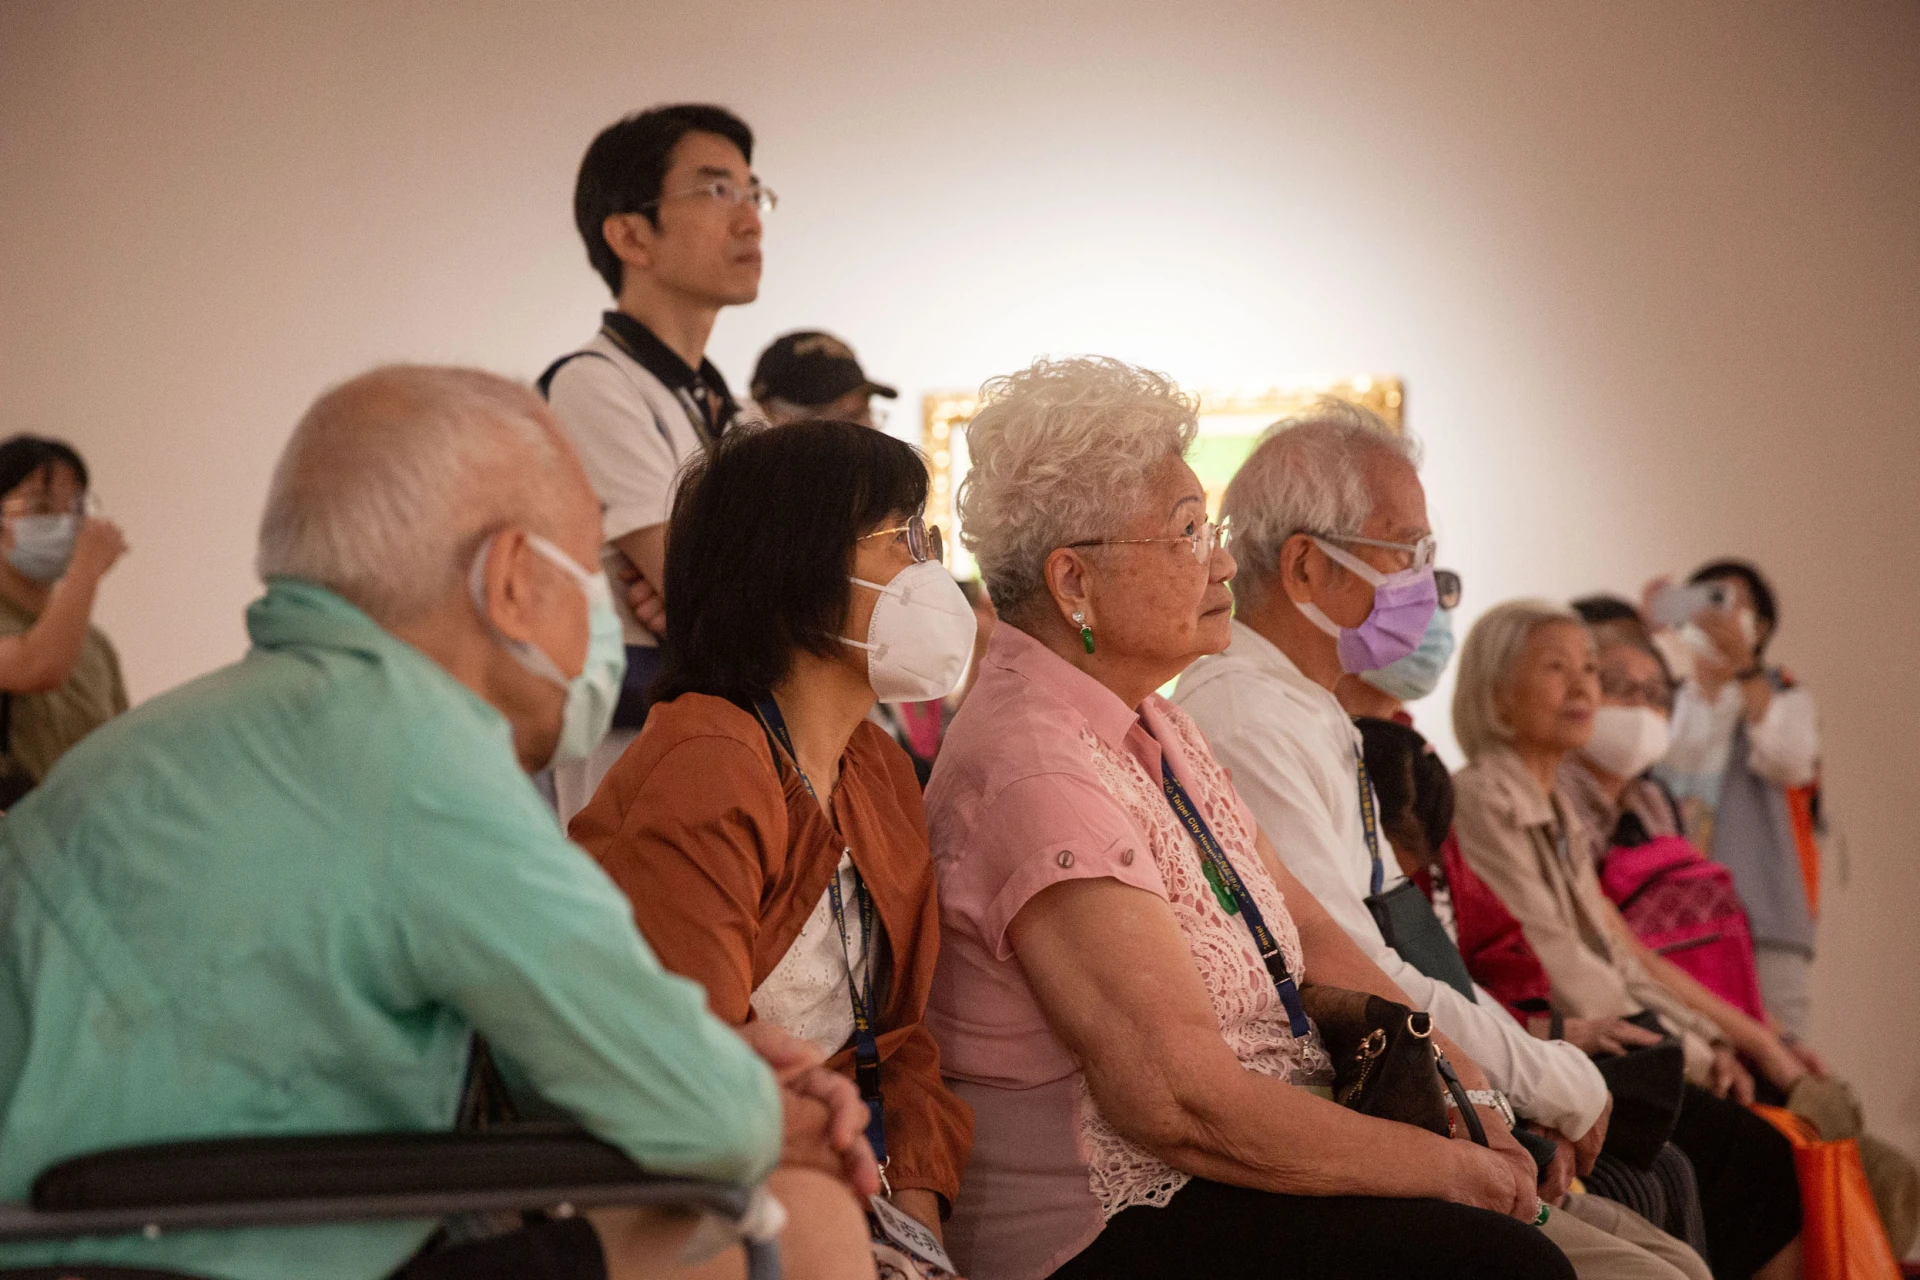 活動中參與者專注地聆聽導覽老師解說畫作。2023.08.07 ©臺北市立美術館-圖片